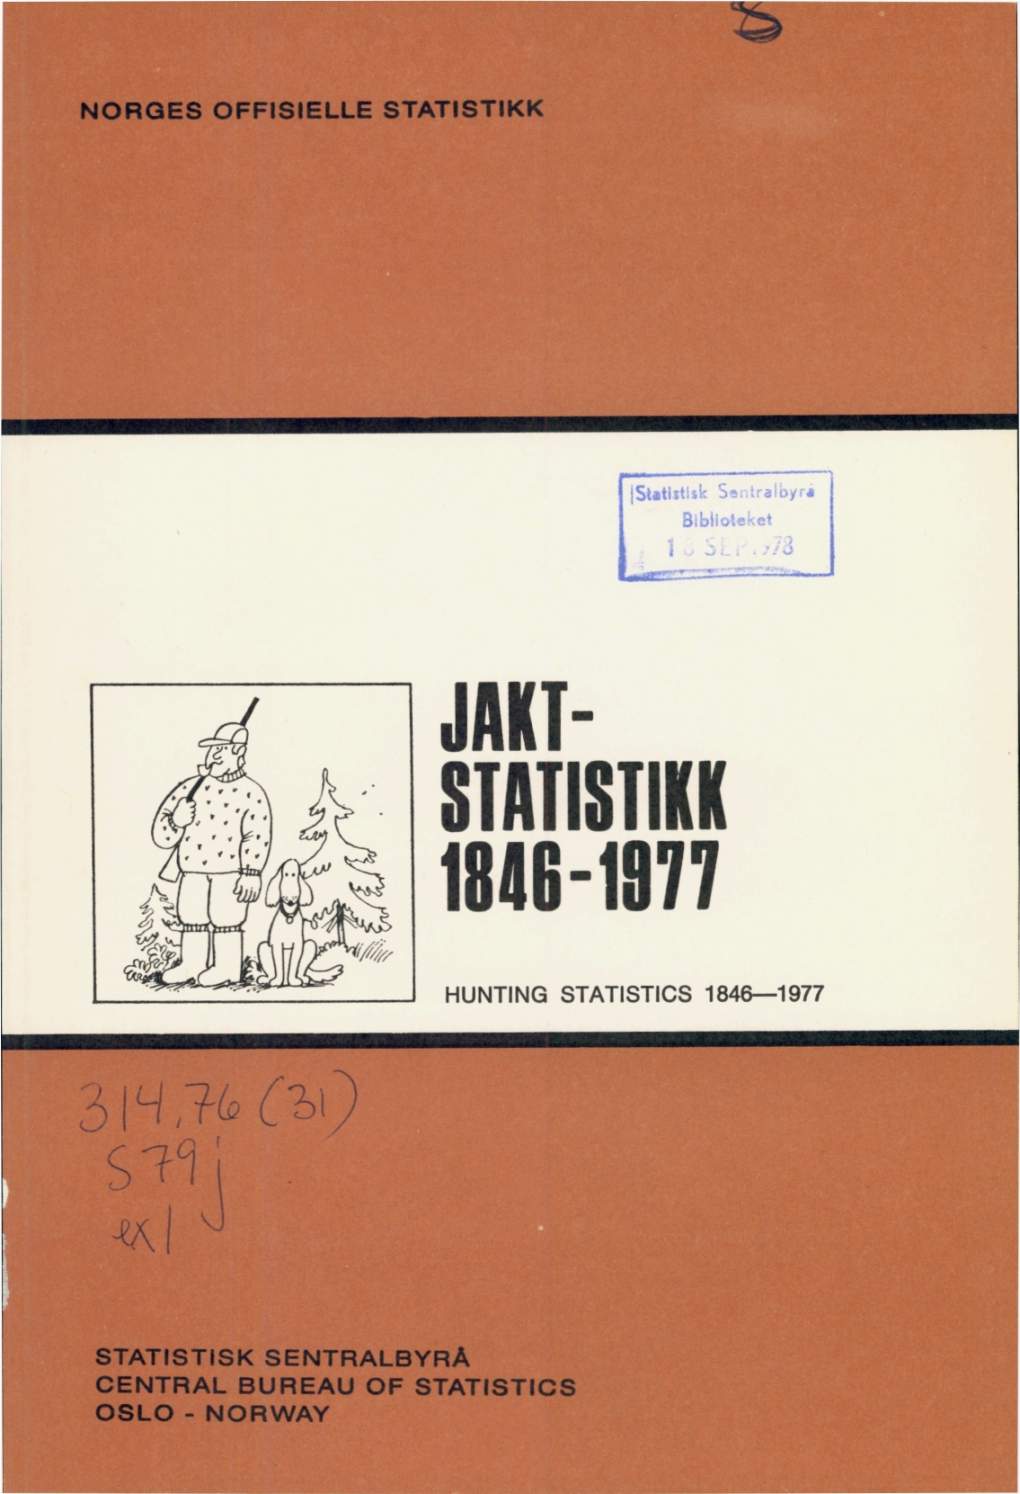 Jaktstatistikk 1846-1977 Gir Tall for Fellingspremier for Rov- Og Skadedyr Fra 1846 , Og for Storviltjakt Fra 1889